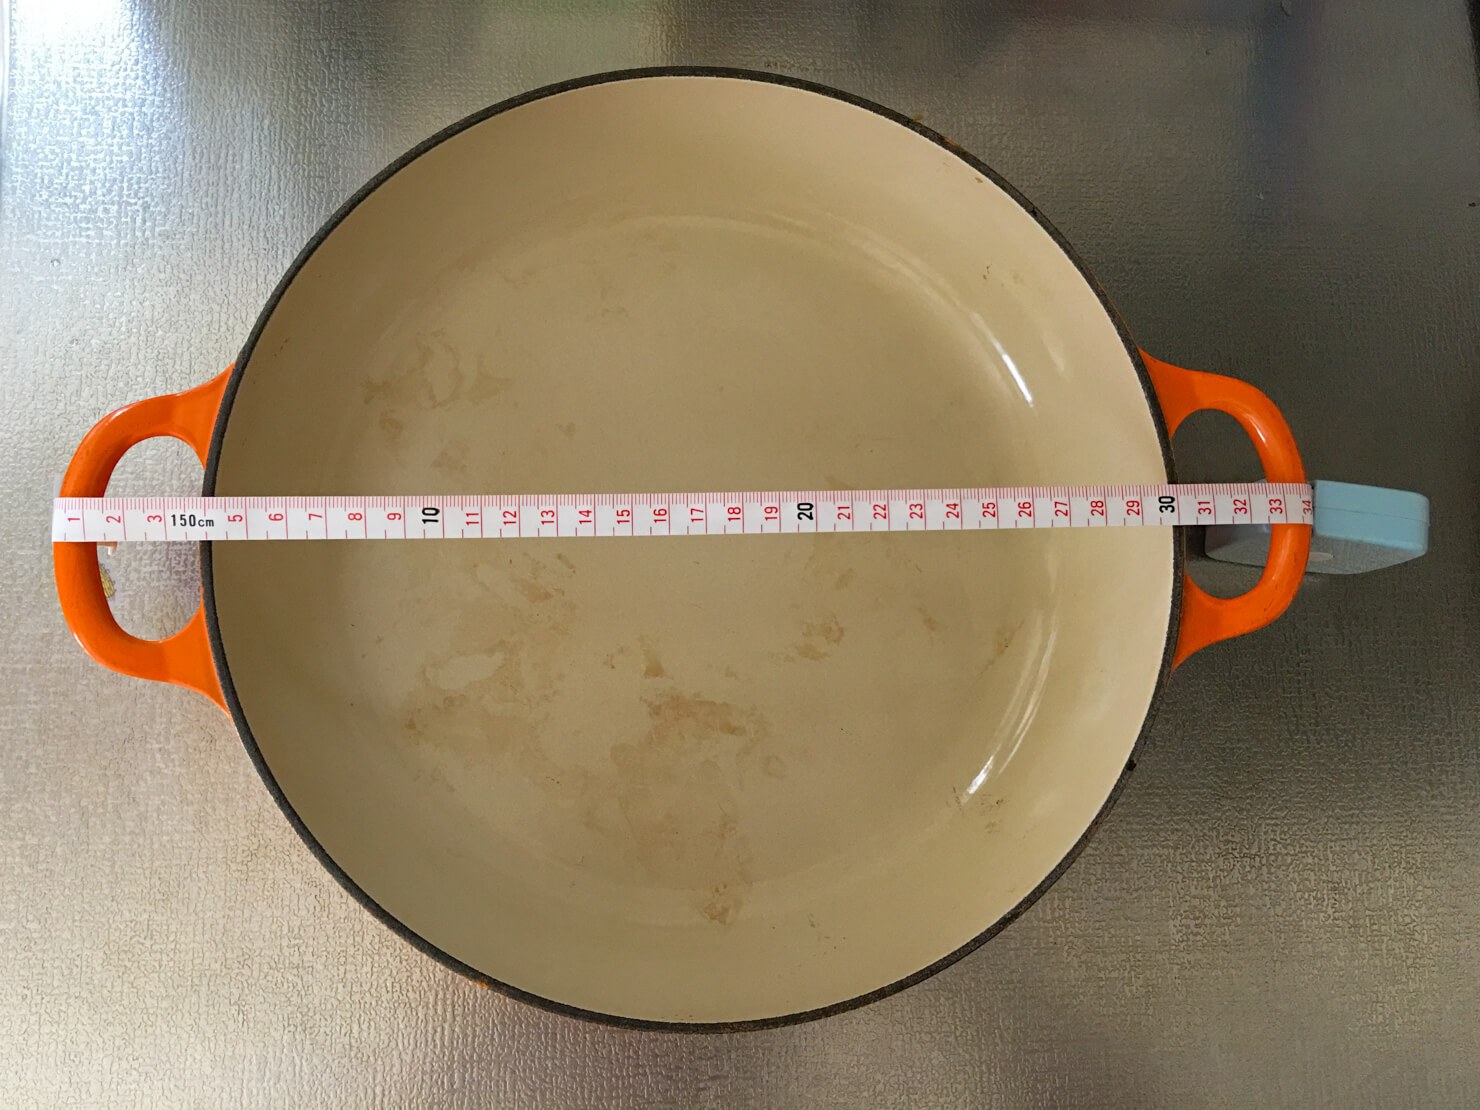 ル・クルーゼのビュッフェキャセロールのサイズを測っている写真